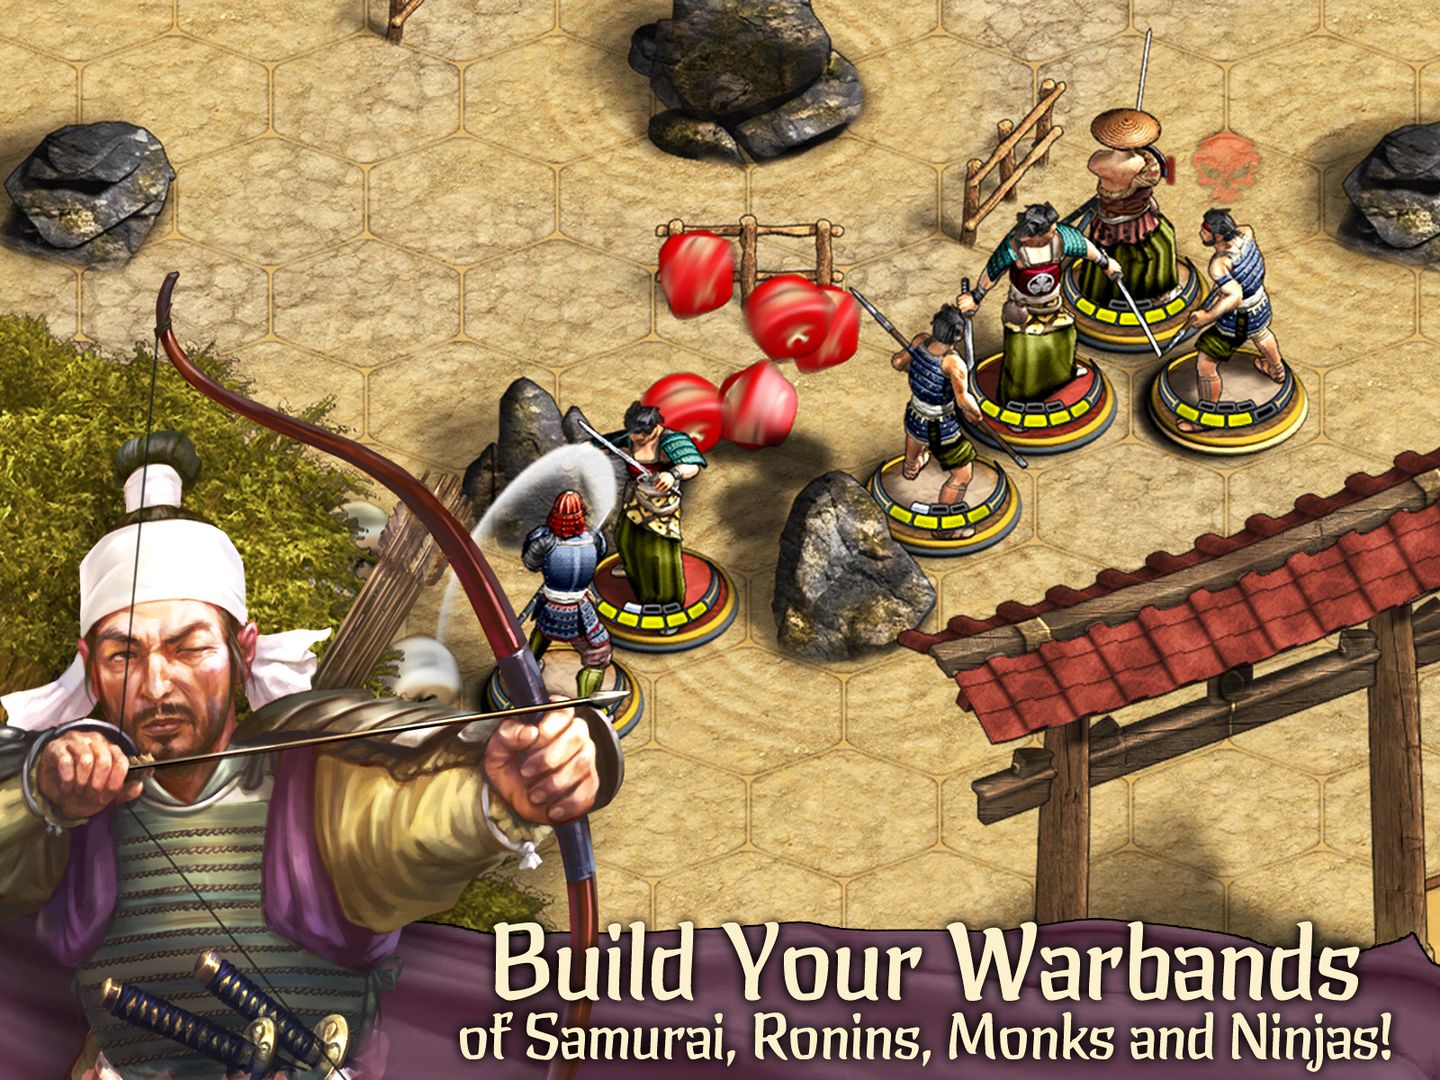 Screenshot of Warbands: Bushido - Tactical Miniatures Board Game